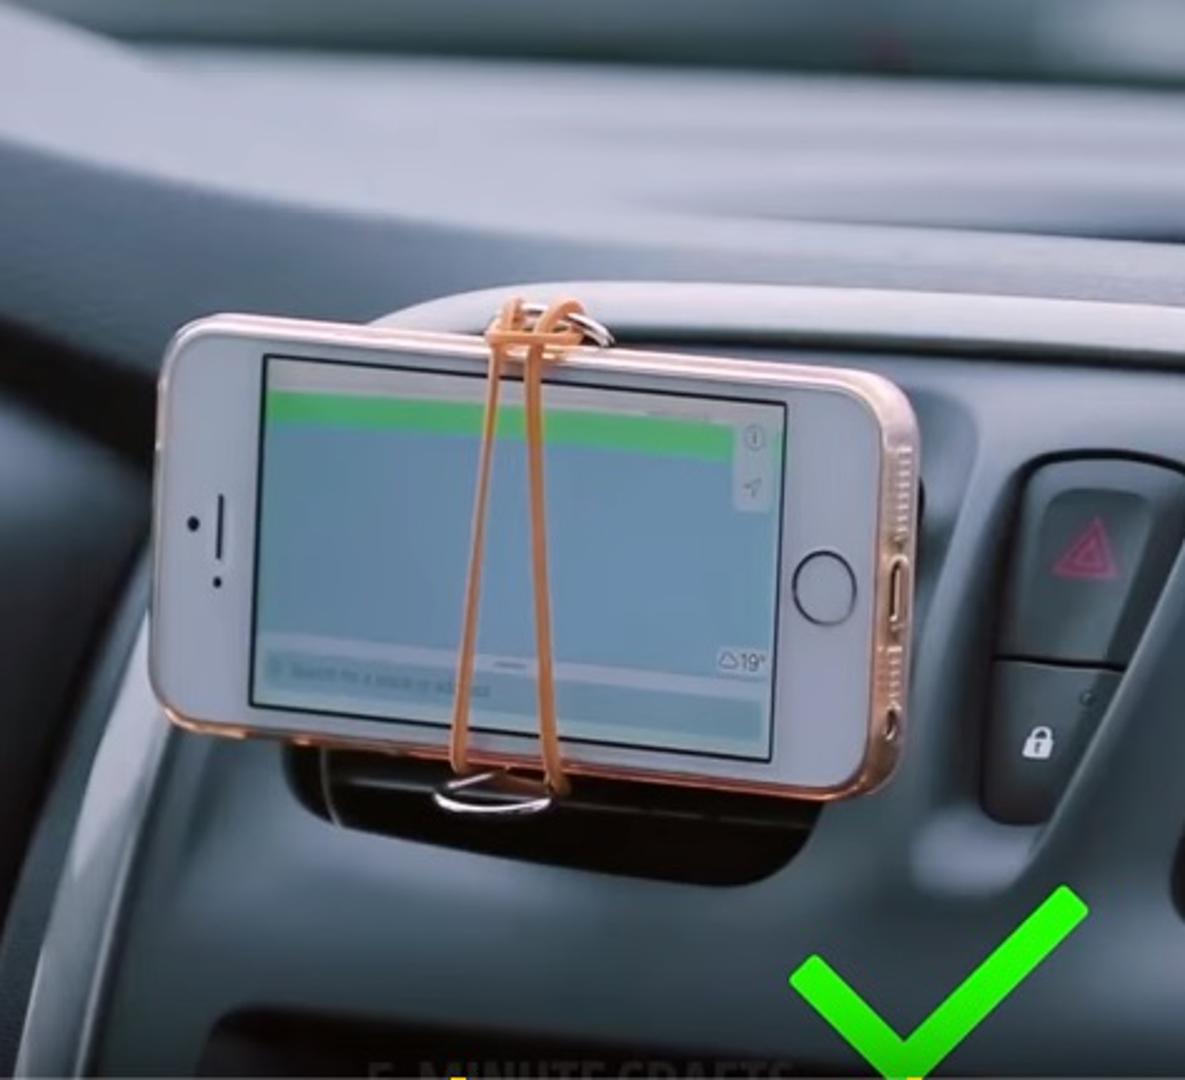 Jednostavno možete i sami napraviti držač mobitela za automobil. Potrebna vam je plastična kvačica za papir s kojom "stisnete" na plastiku automobila kako je prikazano na fotografiji, a preko drški kvačice stavite gumicu koja će pridržavati mobitel. 